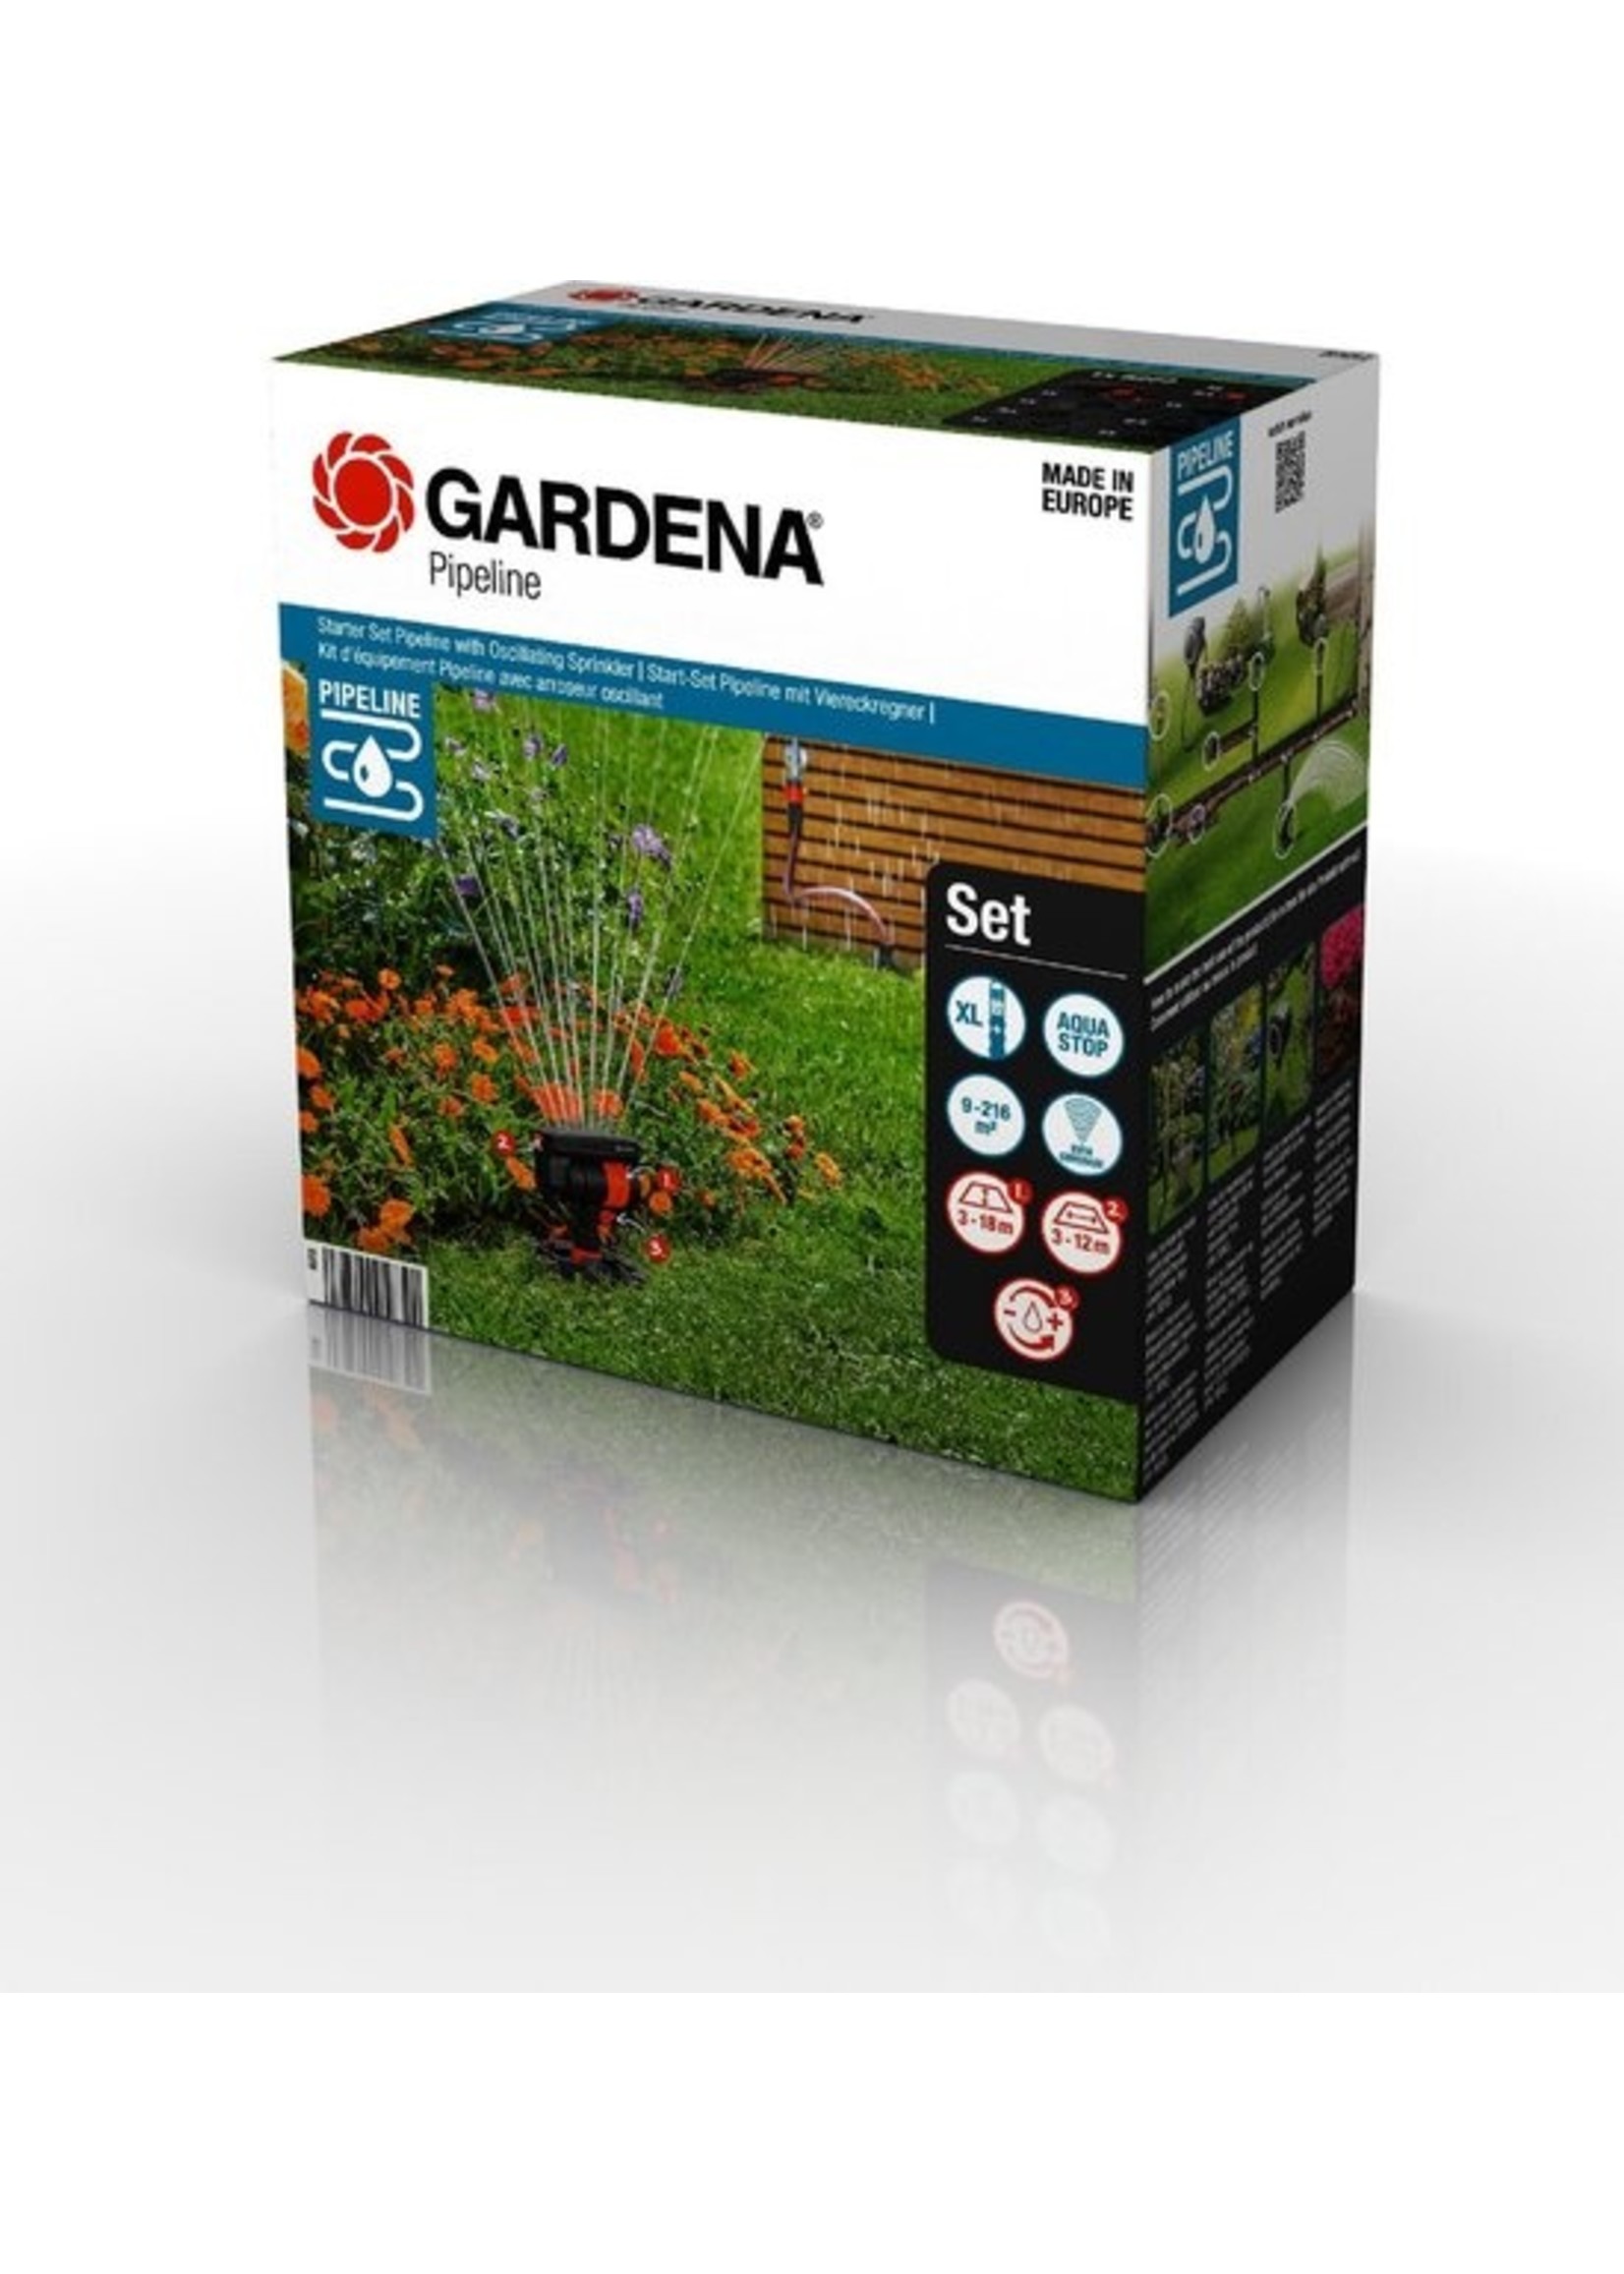 Gardena GARDENA Complete Pipeline Startset met zwenksproeier - flexibel oppervlaktes van 9 tot 216 m²